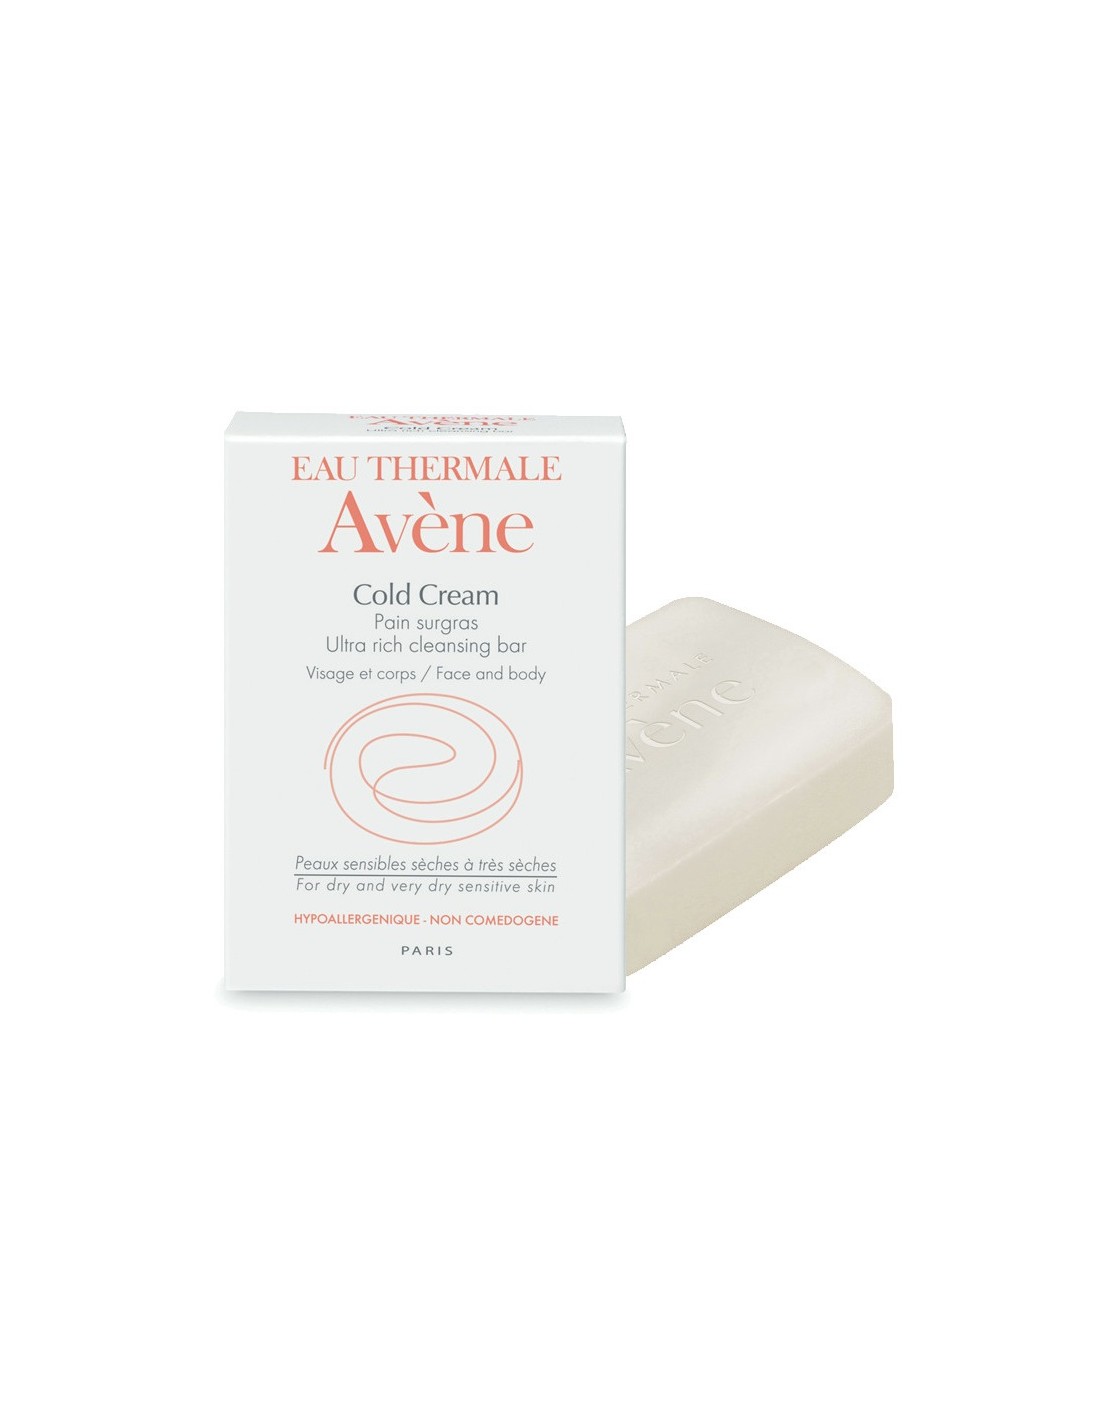 Avene Cold Cream Sapun Emolient, 100g - SAPUNURI - AVENE